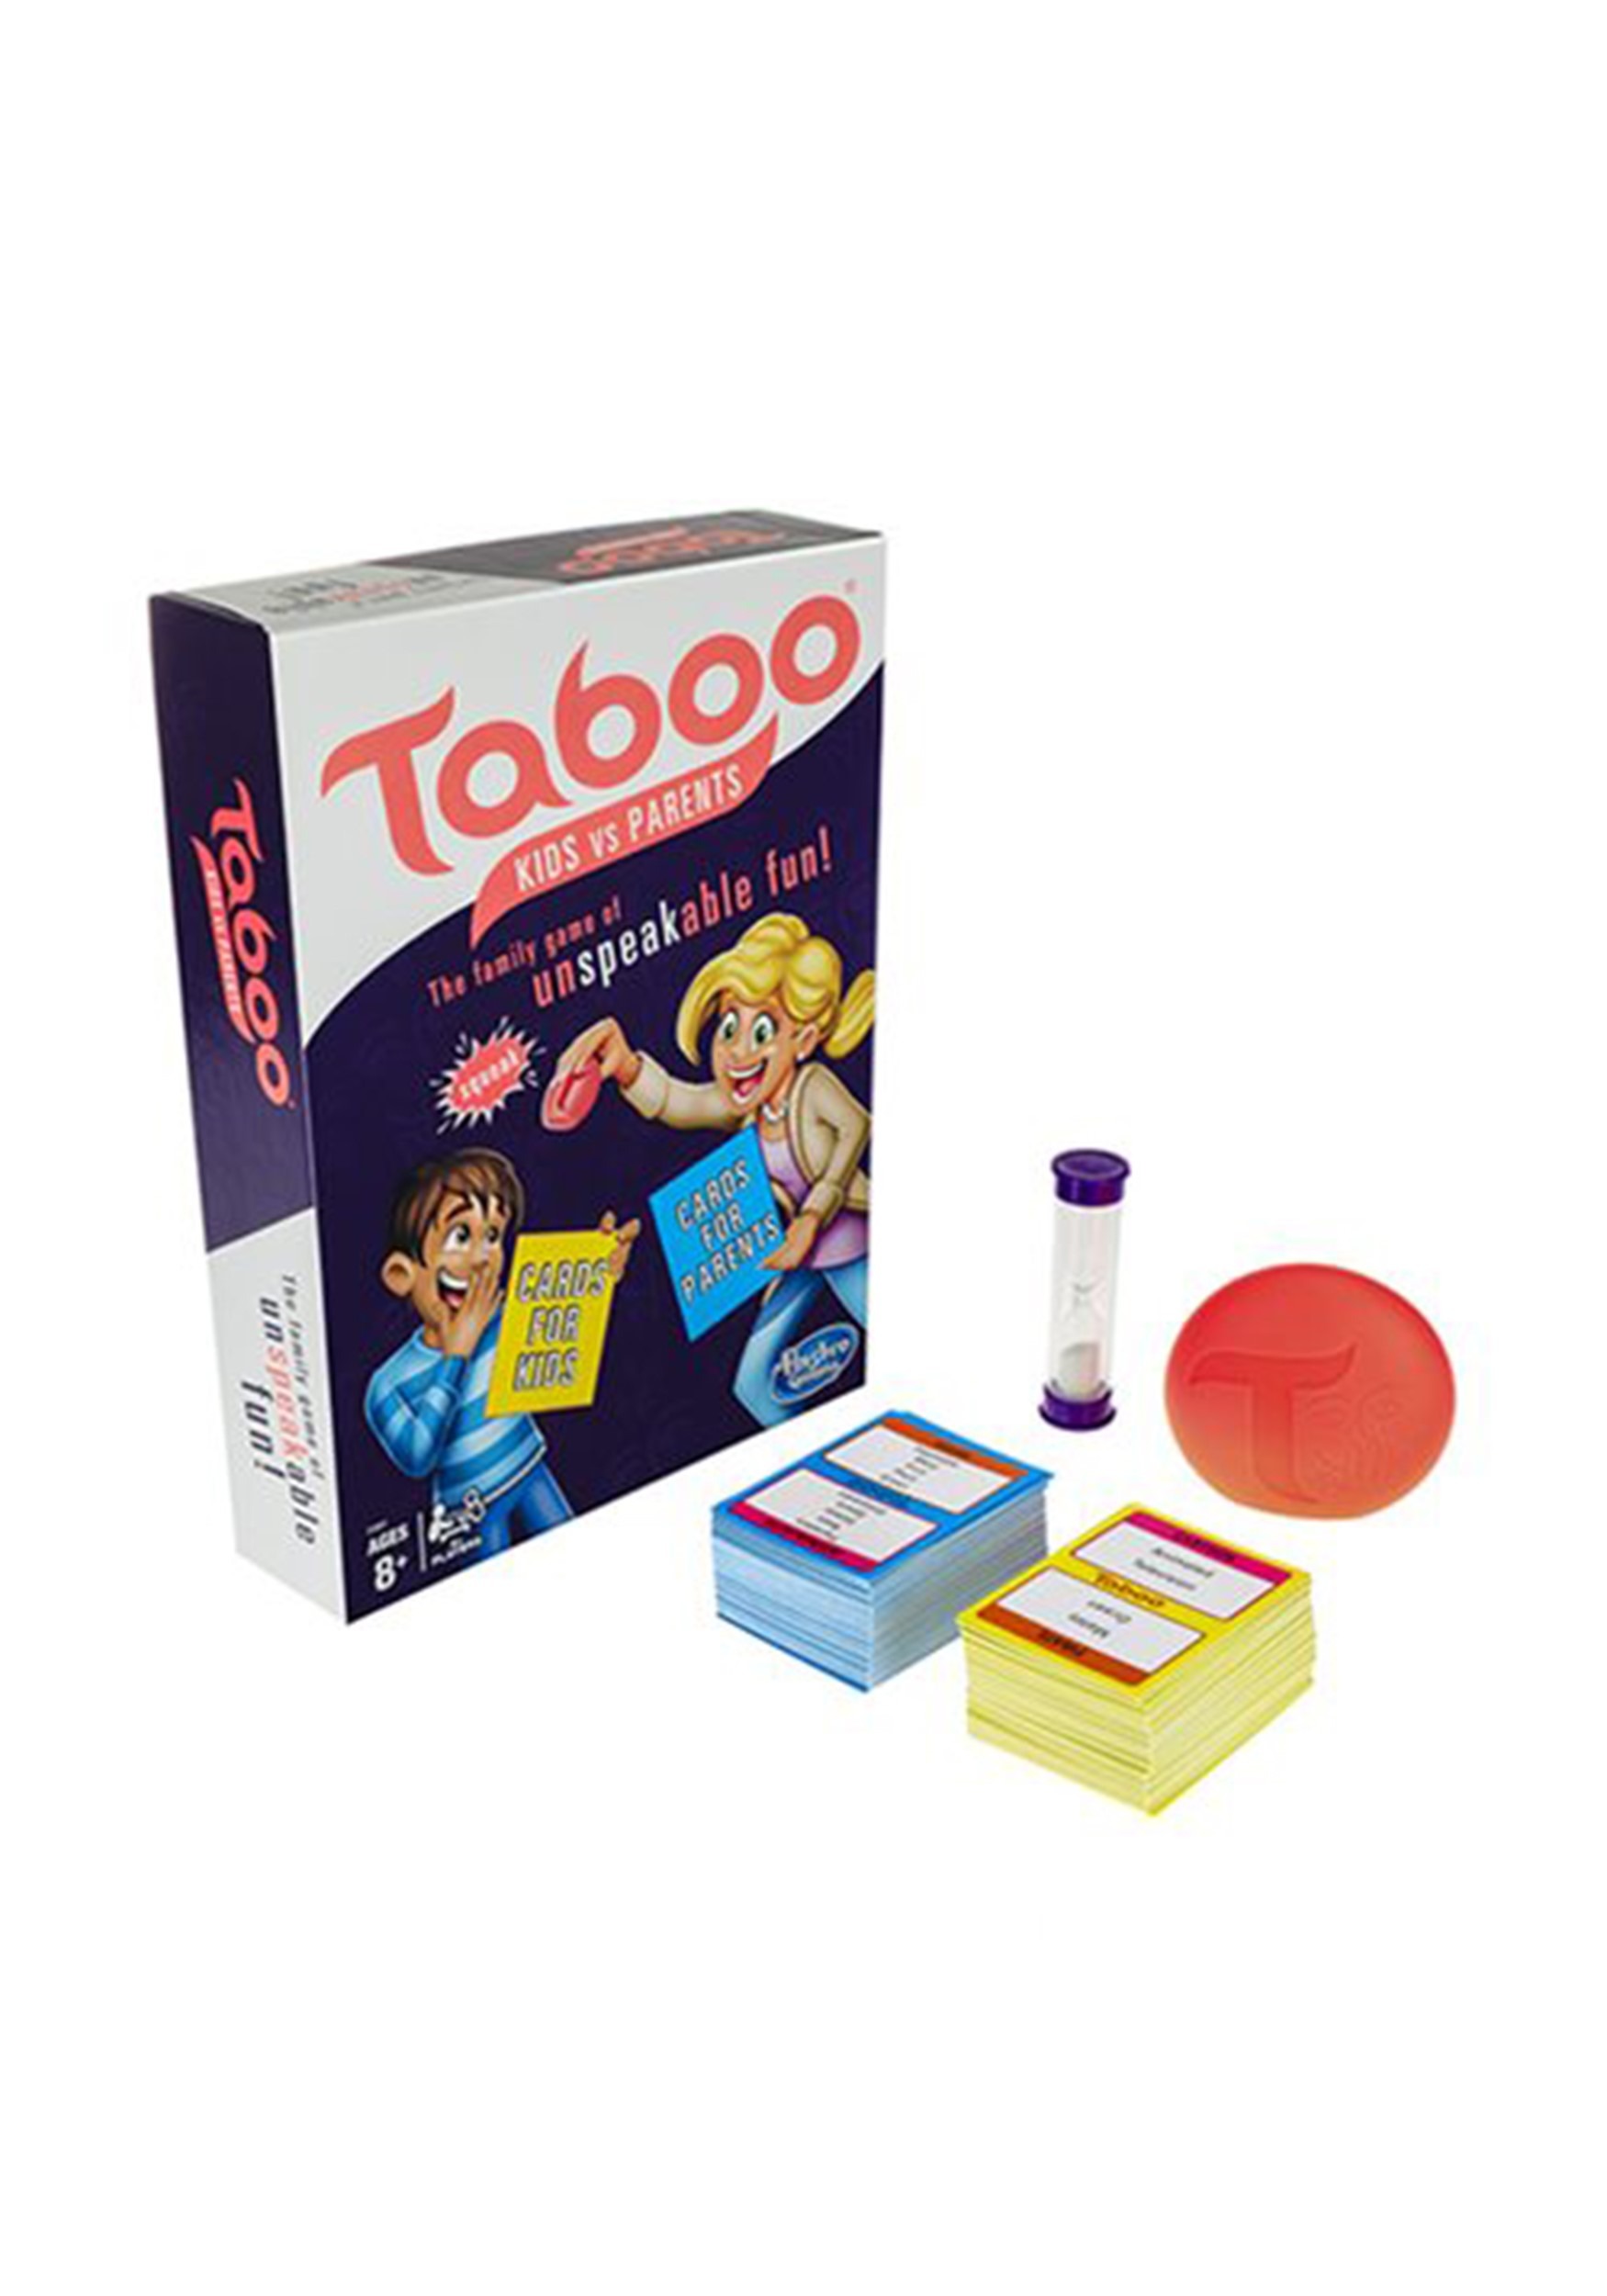 Hasbro Taboo Kids vs Parents Family Board Game